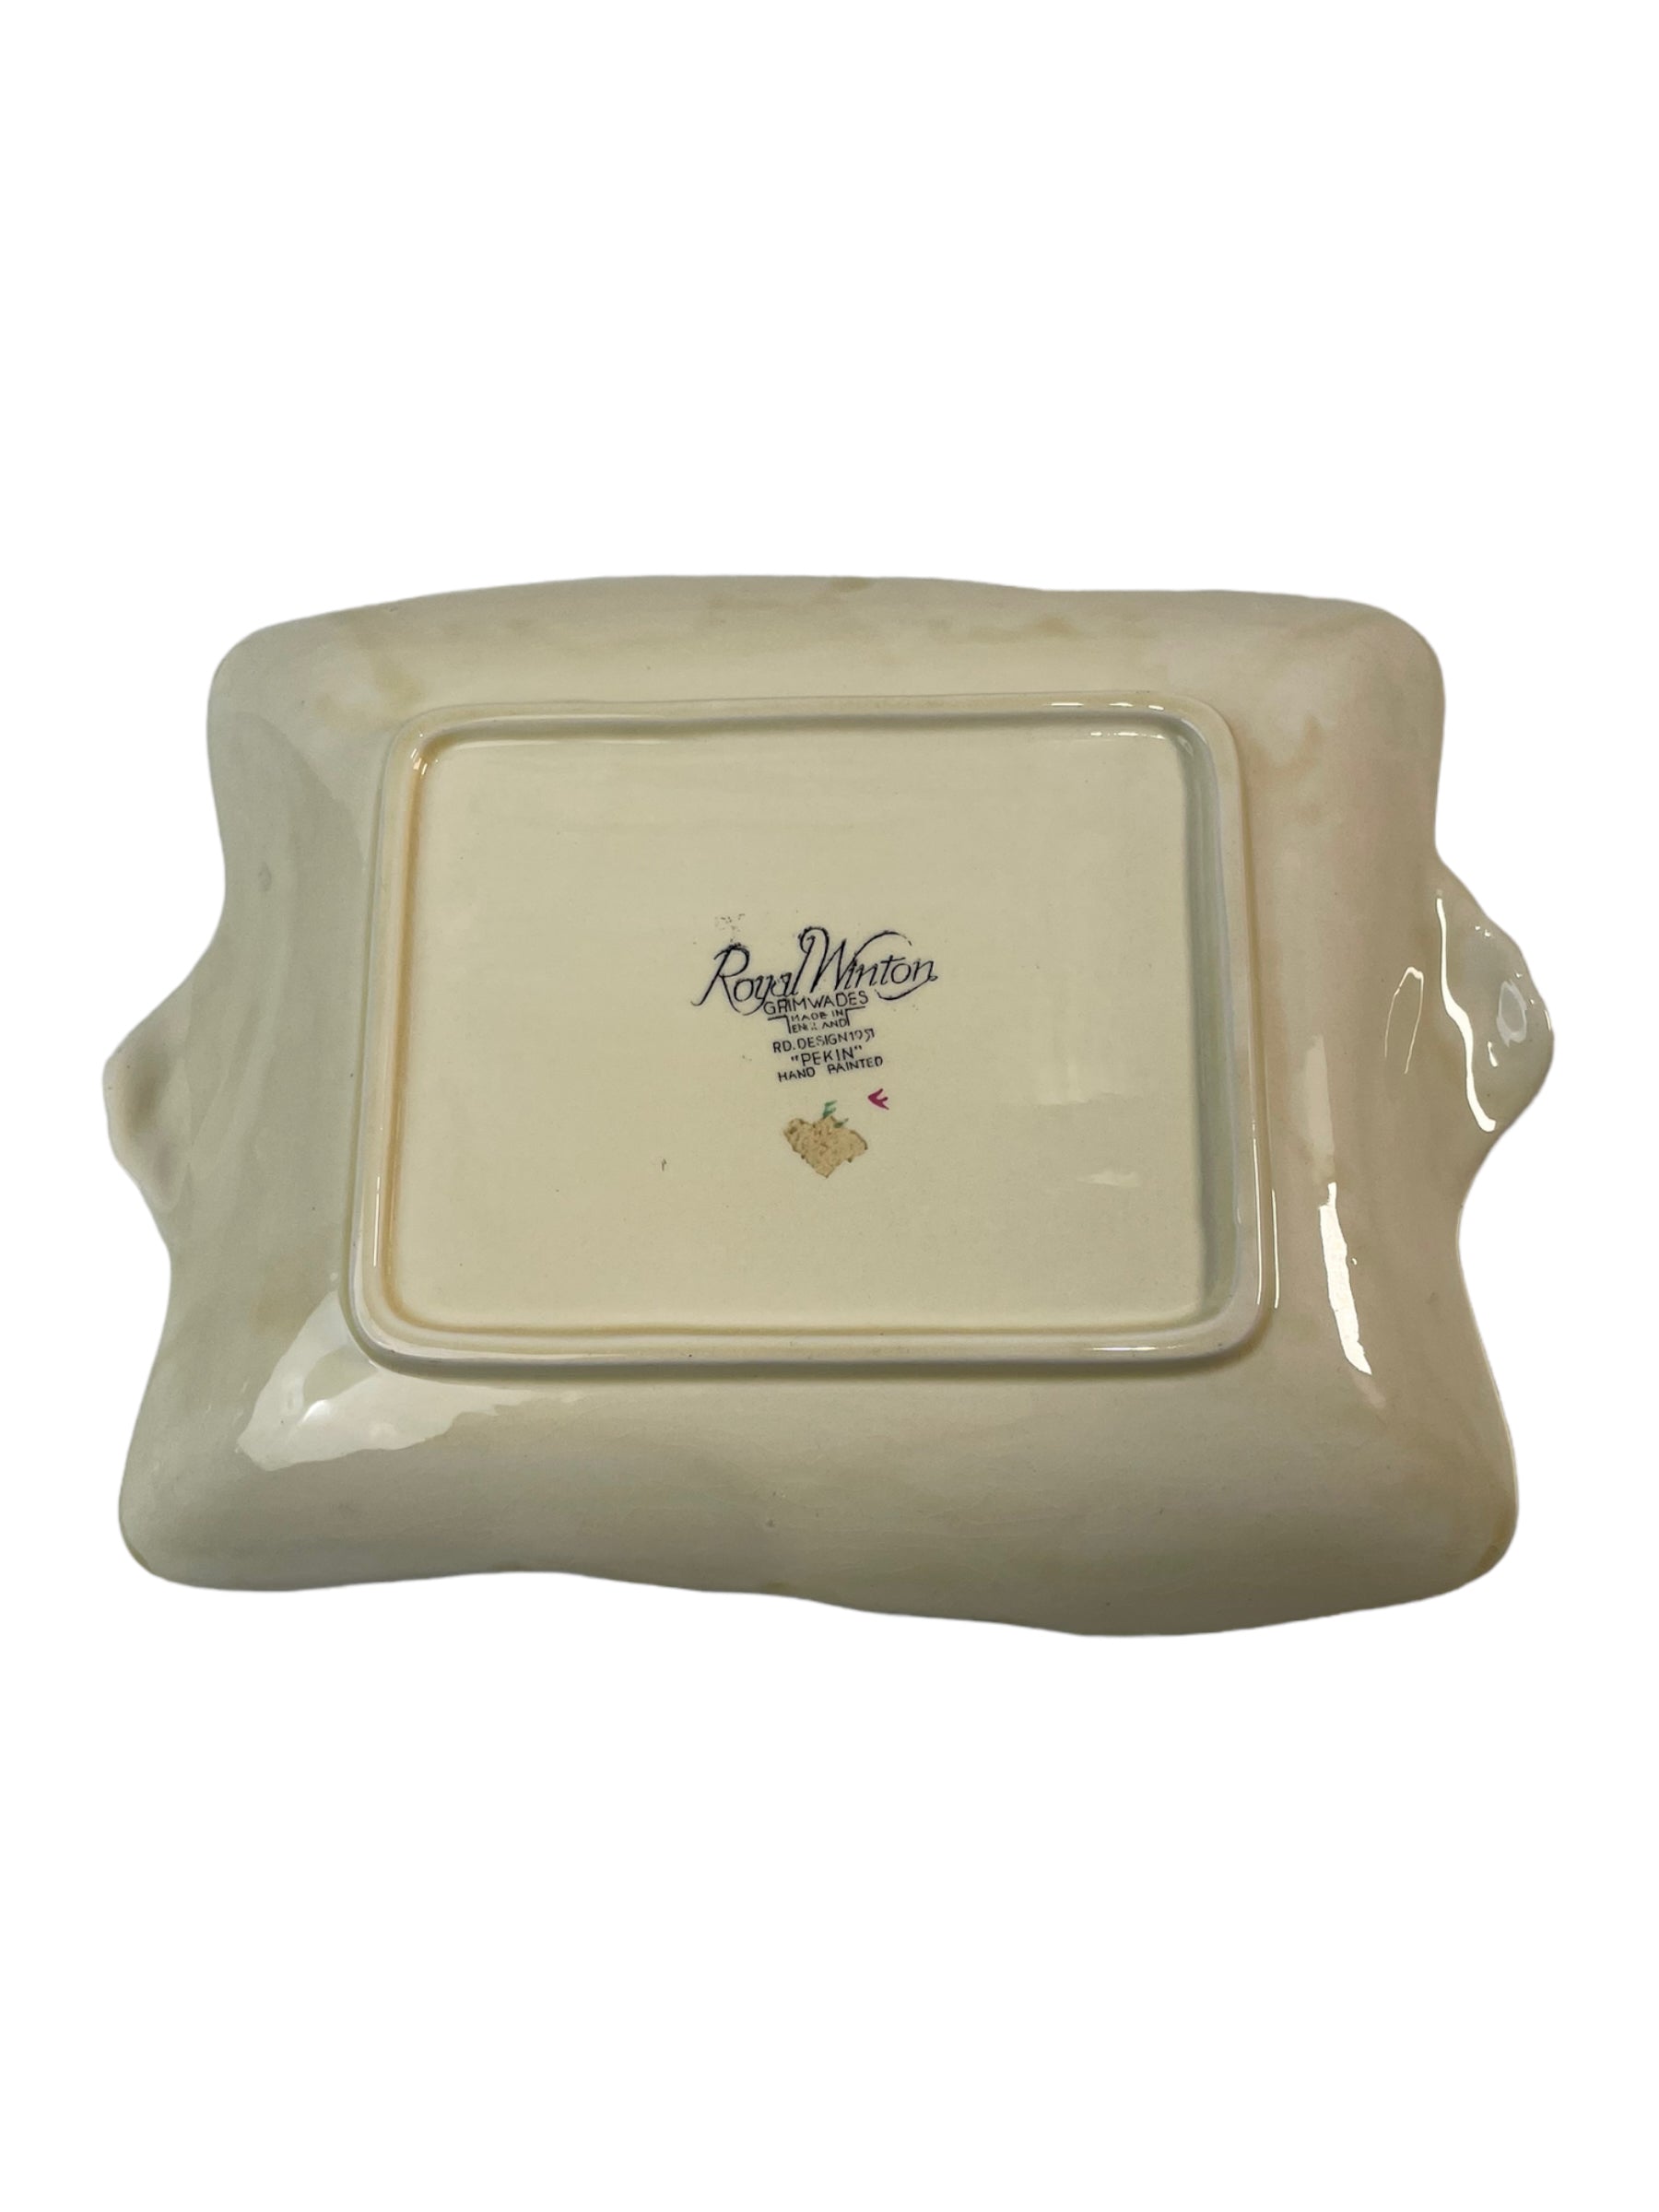 Pekin Cream Serving Platter by Royal Winton - 1950's